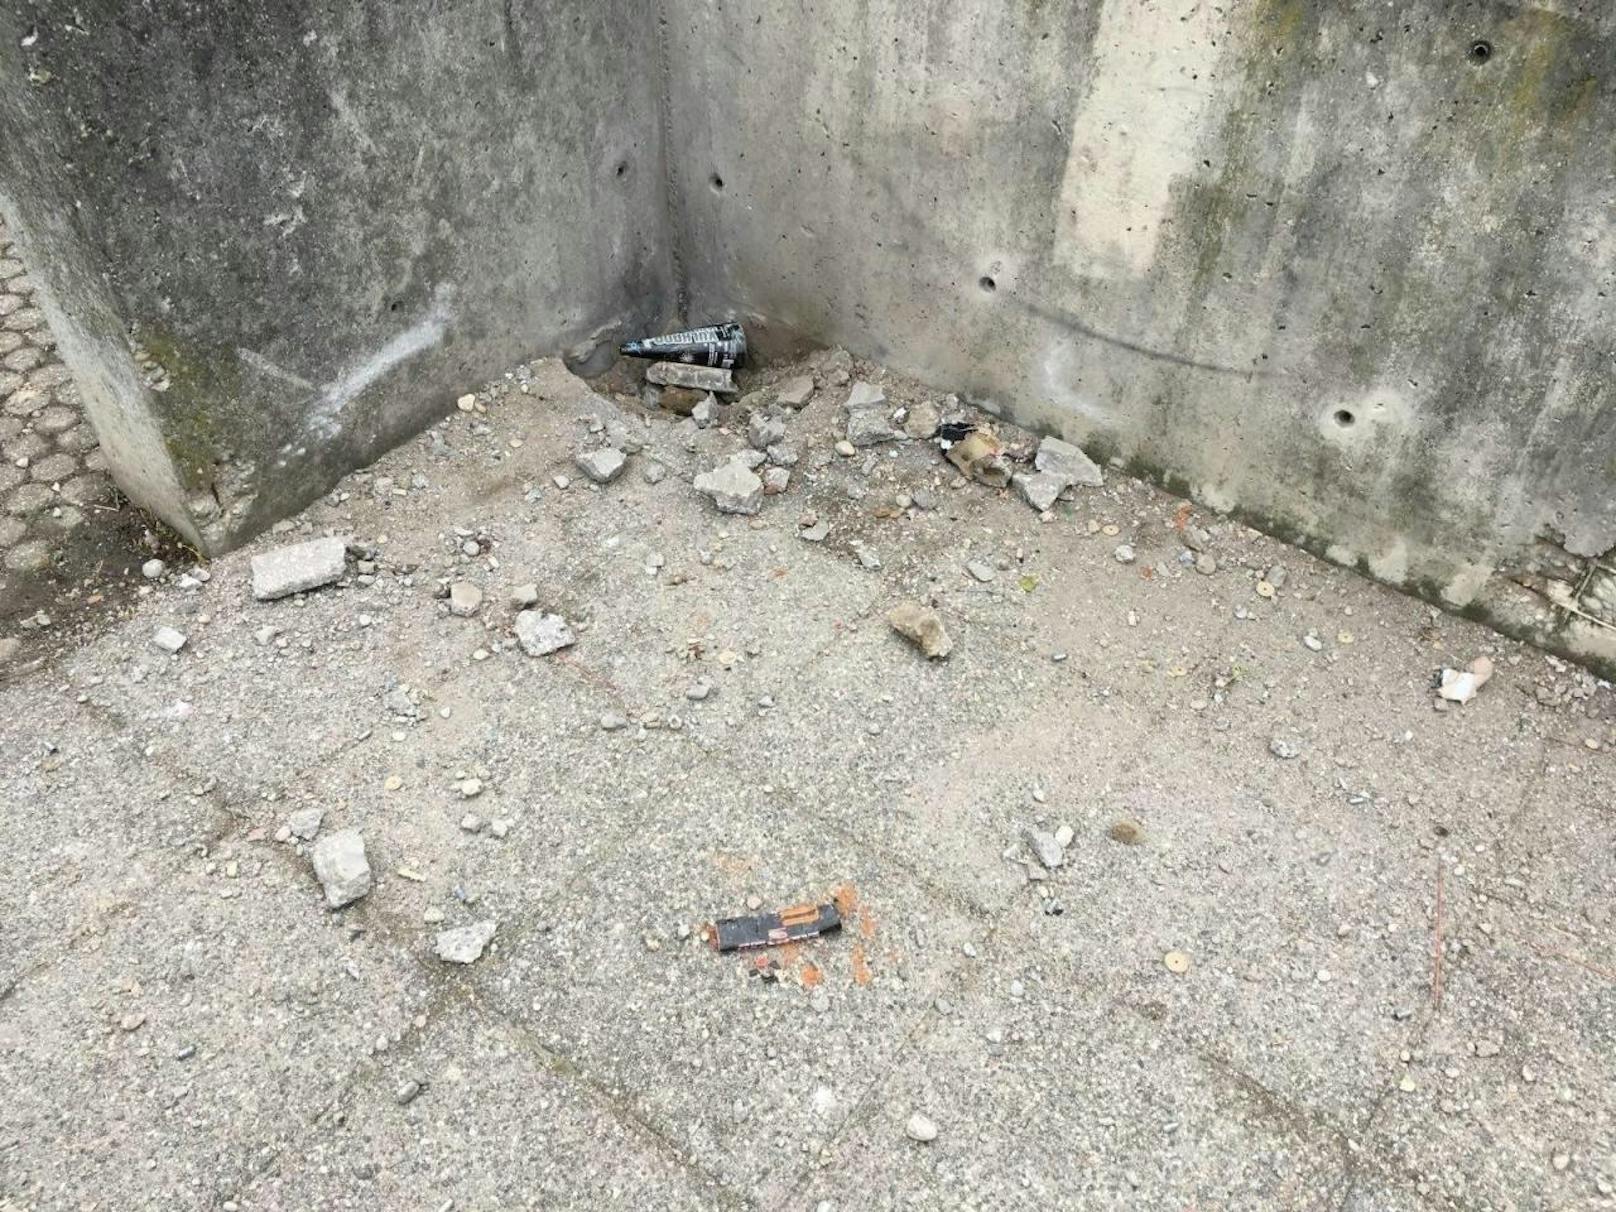 "In der Silvesternacht wurde eine Ecke aus Beton gesprengt" , schreibt Achjan Z. Ort des Geschehens:  Mitterhofergasse 2 (Wien-Floridsdorf)